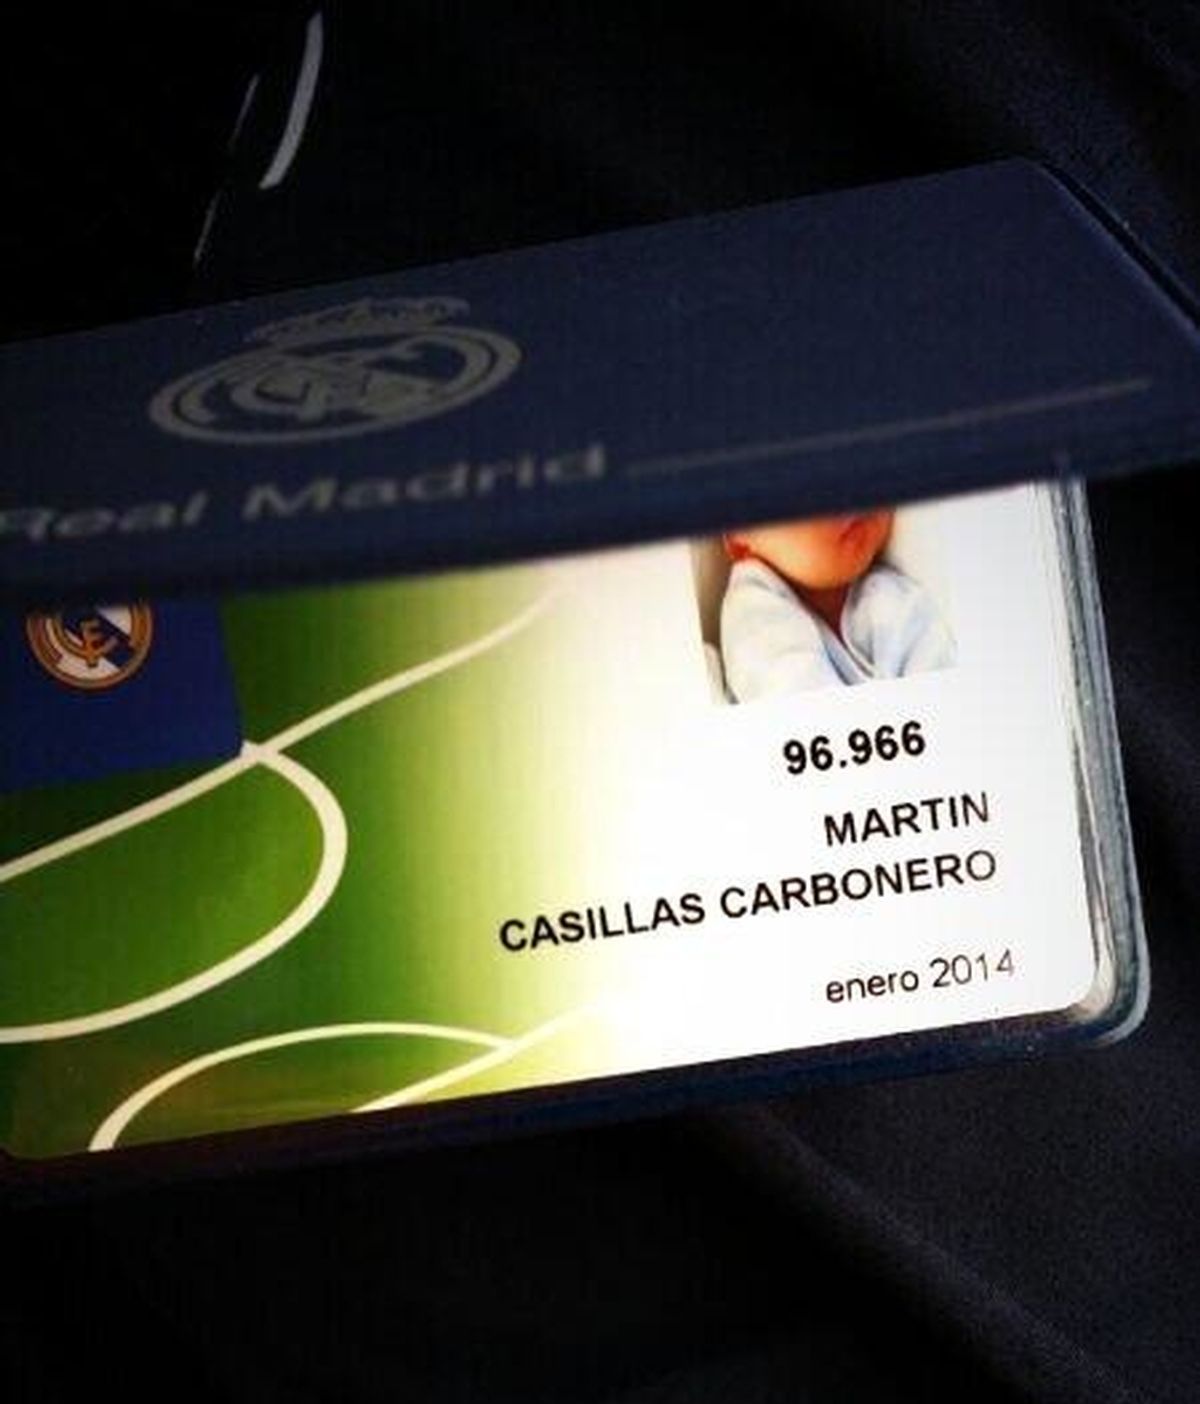 Martín Casillas Carbonero es el socio 96.966 del Real Madrid